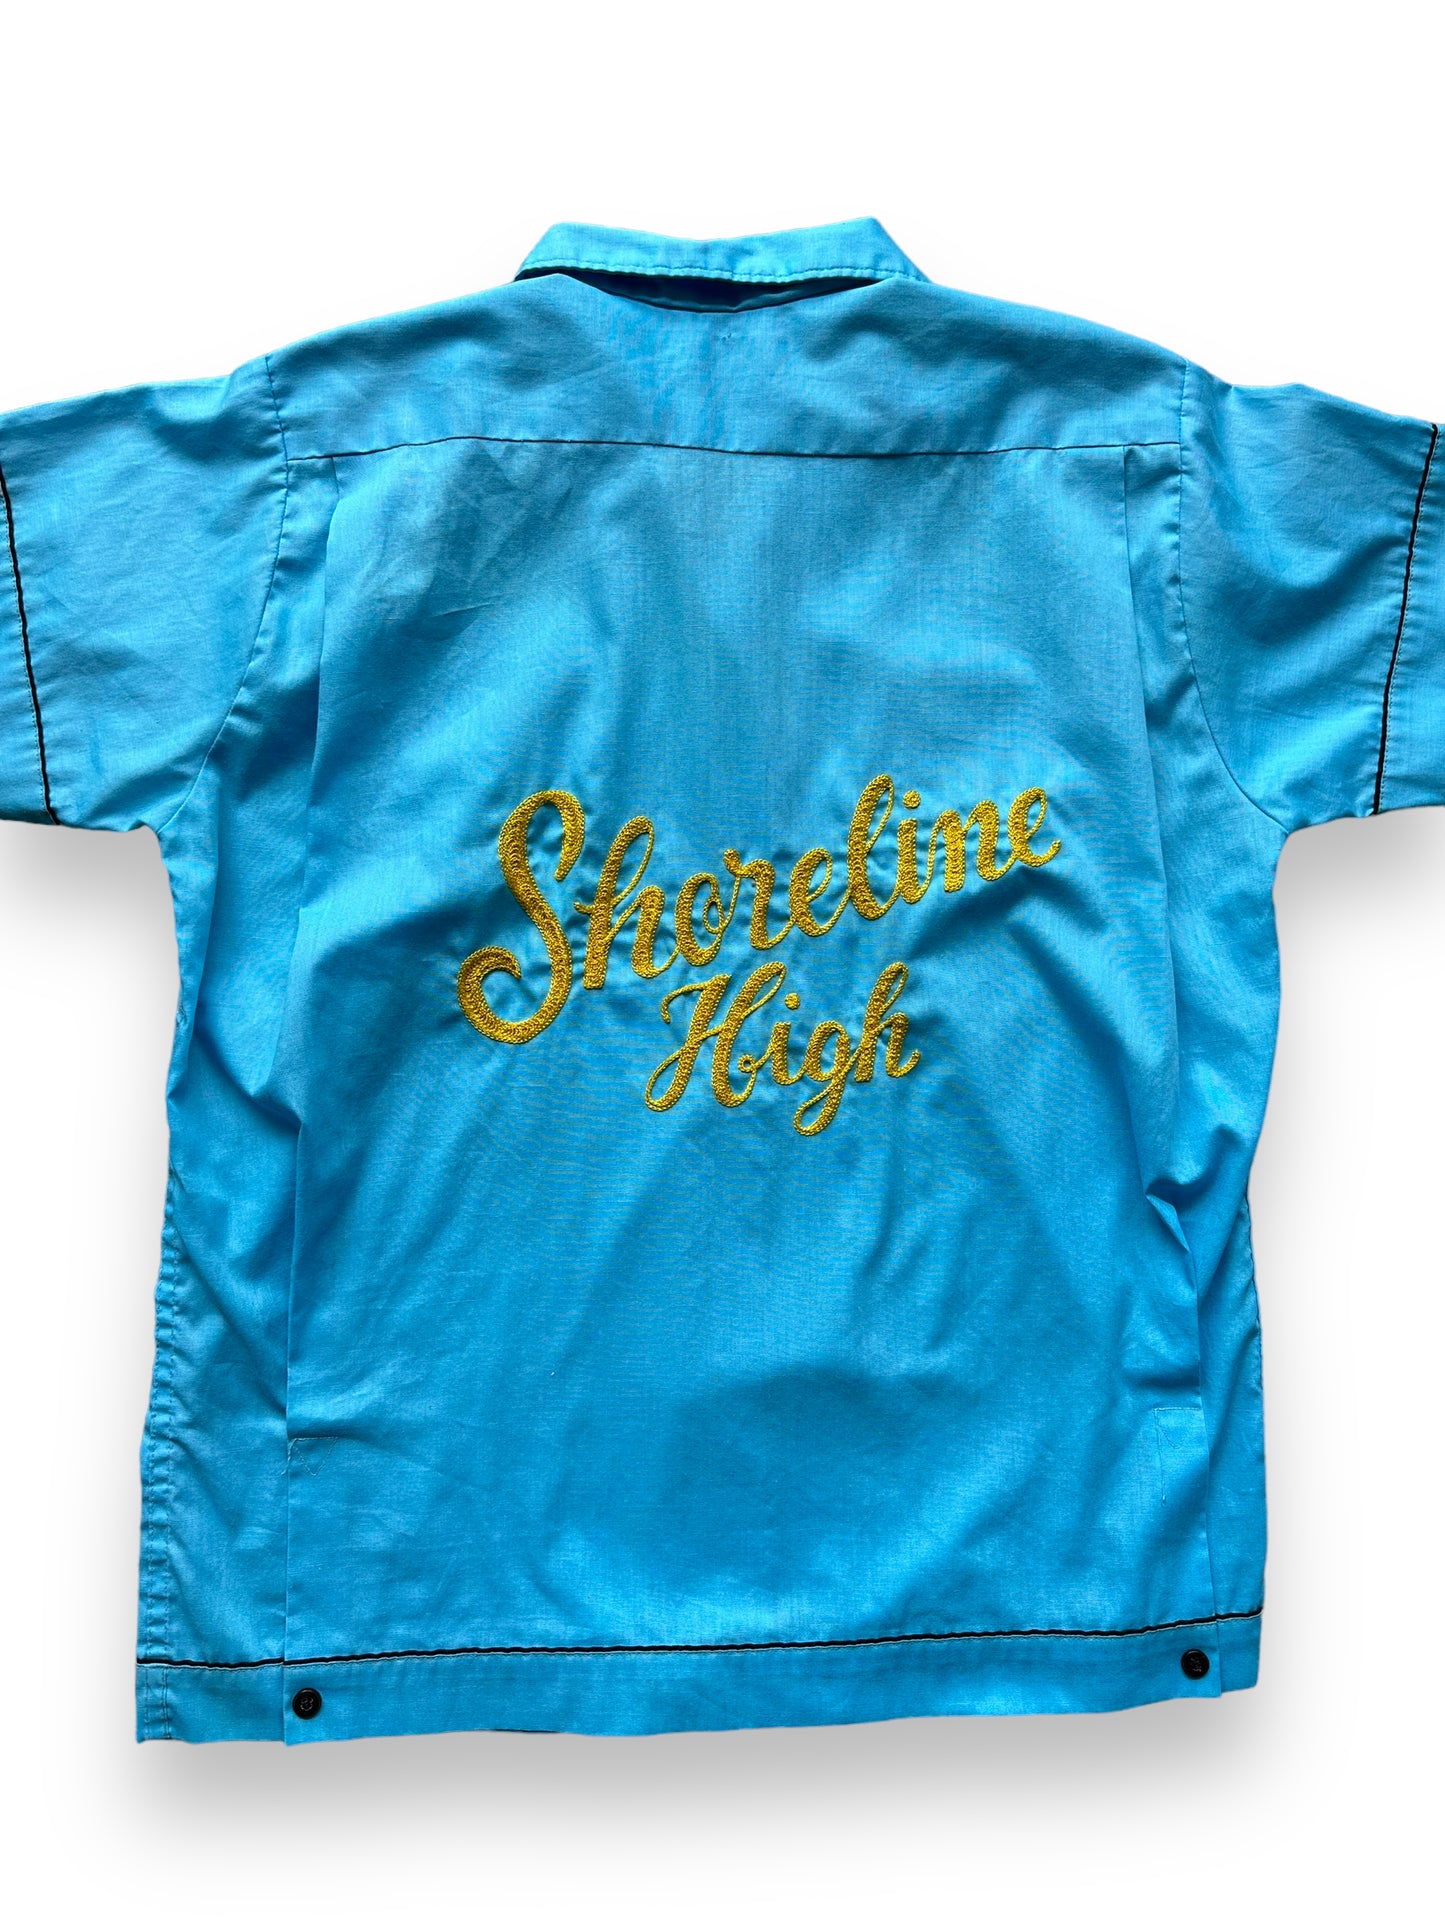 Back close up of Vintage "Shoreline High" Chainstitched Bowling Shirt SZ 36 | Vintage Bowling Shirt Seattle | Barn Owl Vintage Seattle